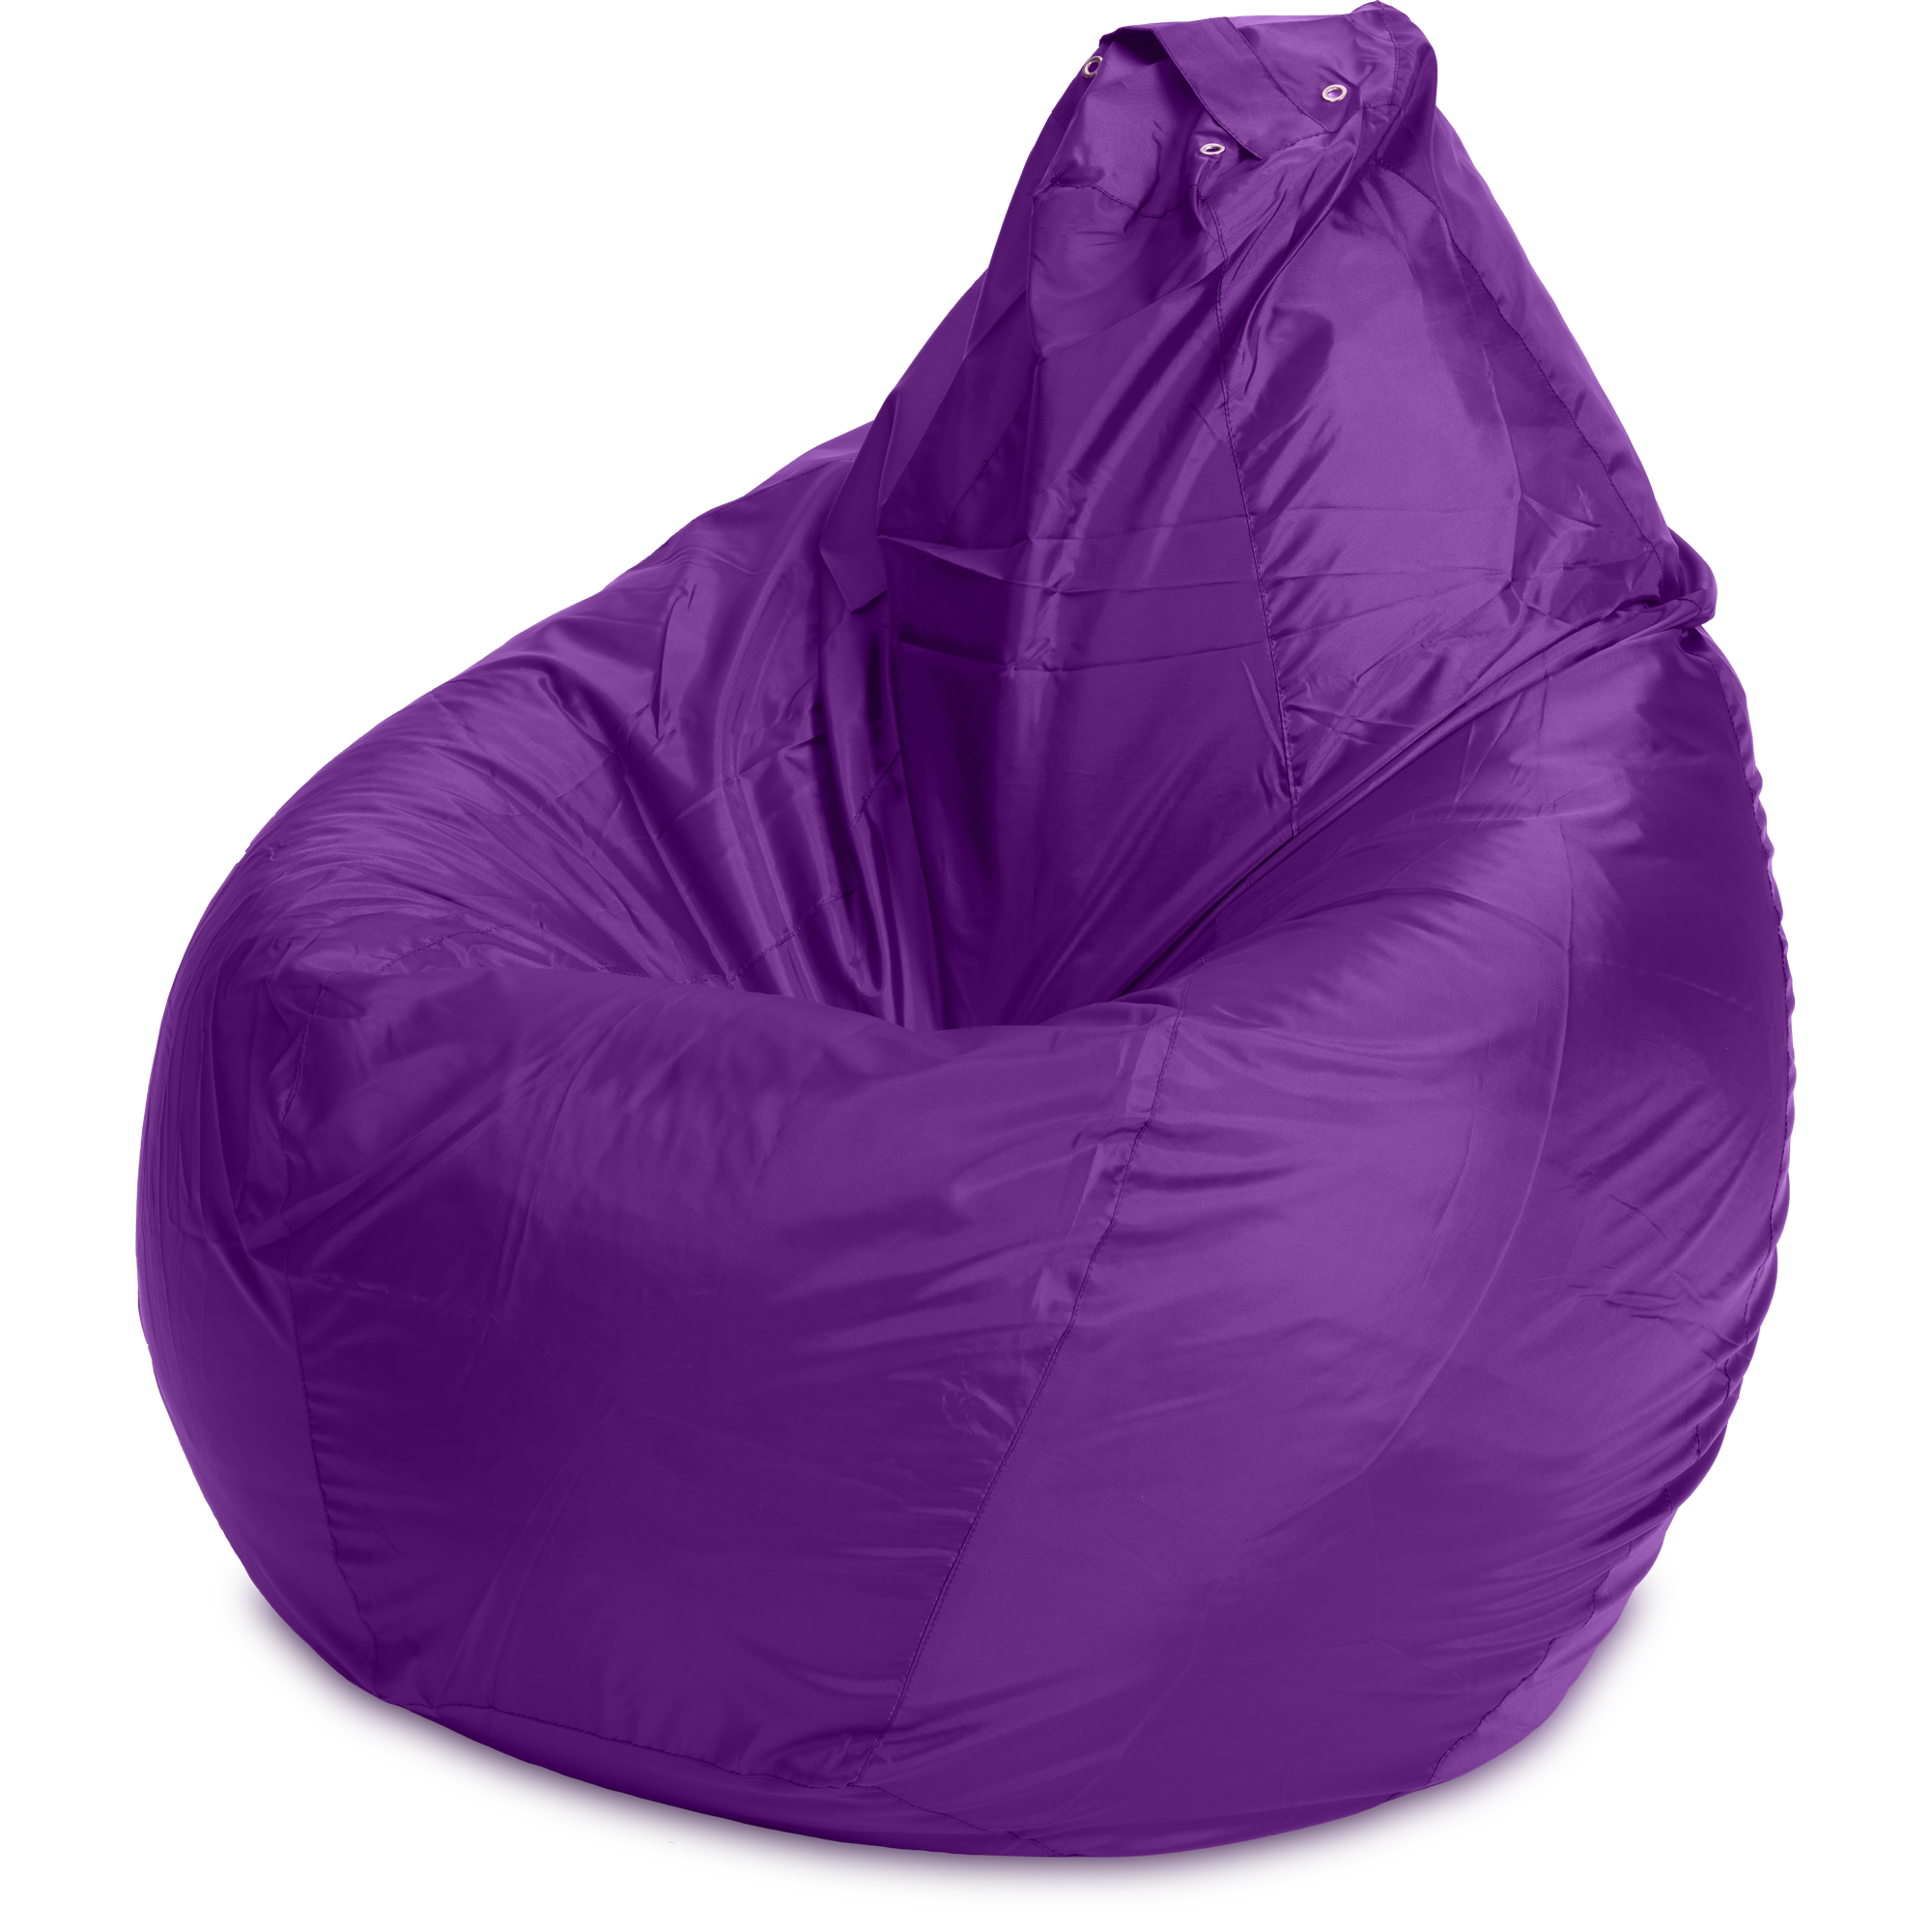 Пуффбери кресло-мешок Груша, XXL пурпурный оксфорд